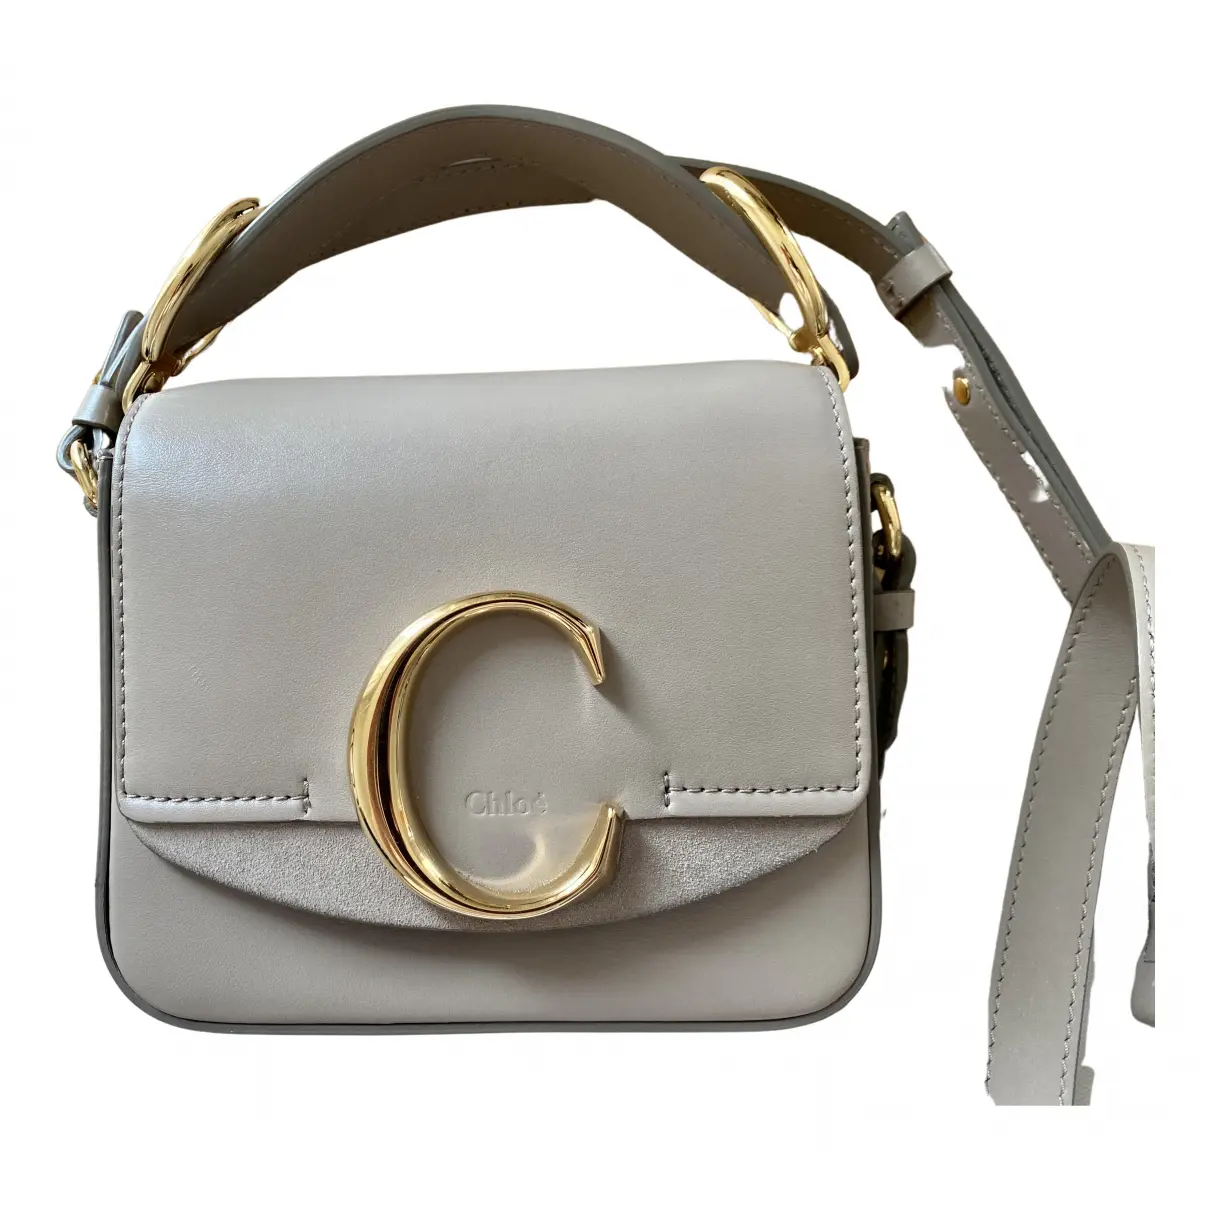 C leather bag Chloé